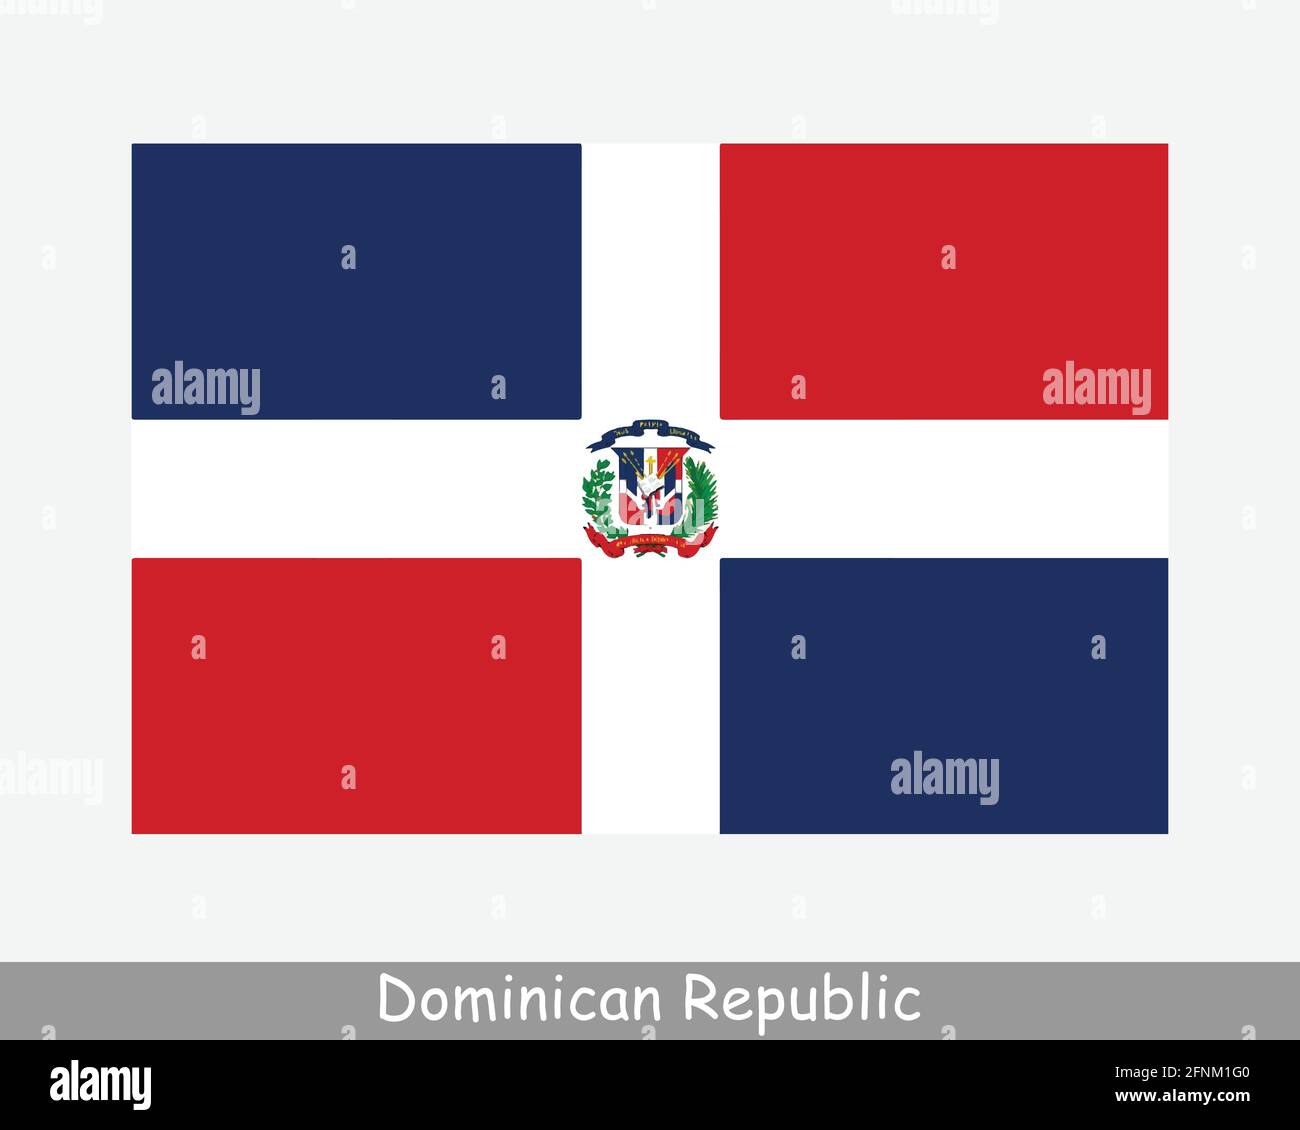 Nationalflagge der Dominikanischen Republik. Dominikanische Republik Land Flagge Detailliertes Banner. EPS-Vektorgrafik Datei ausschneiden Stock Vektor